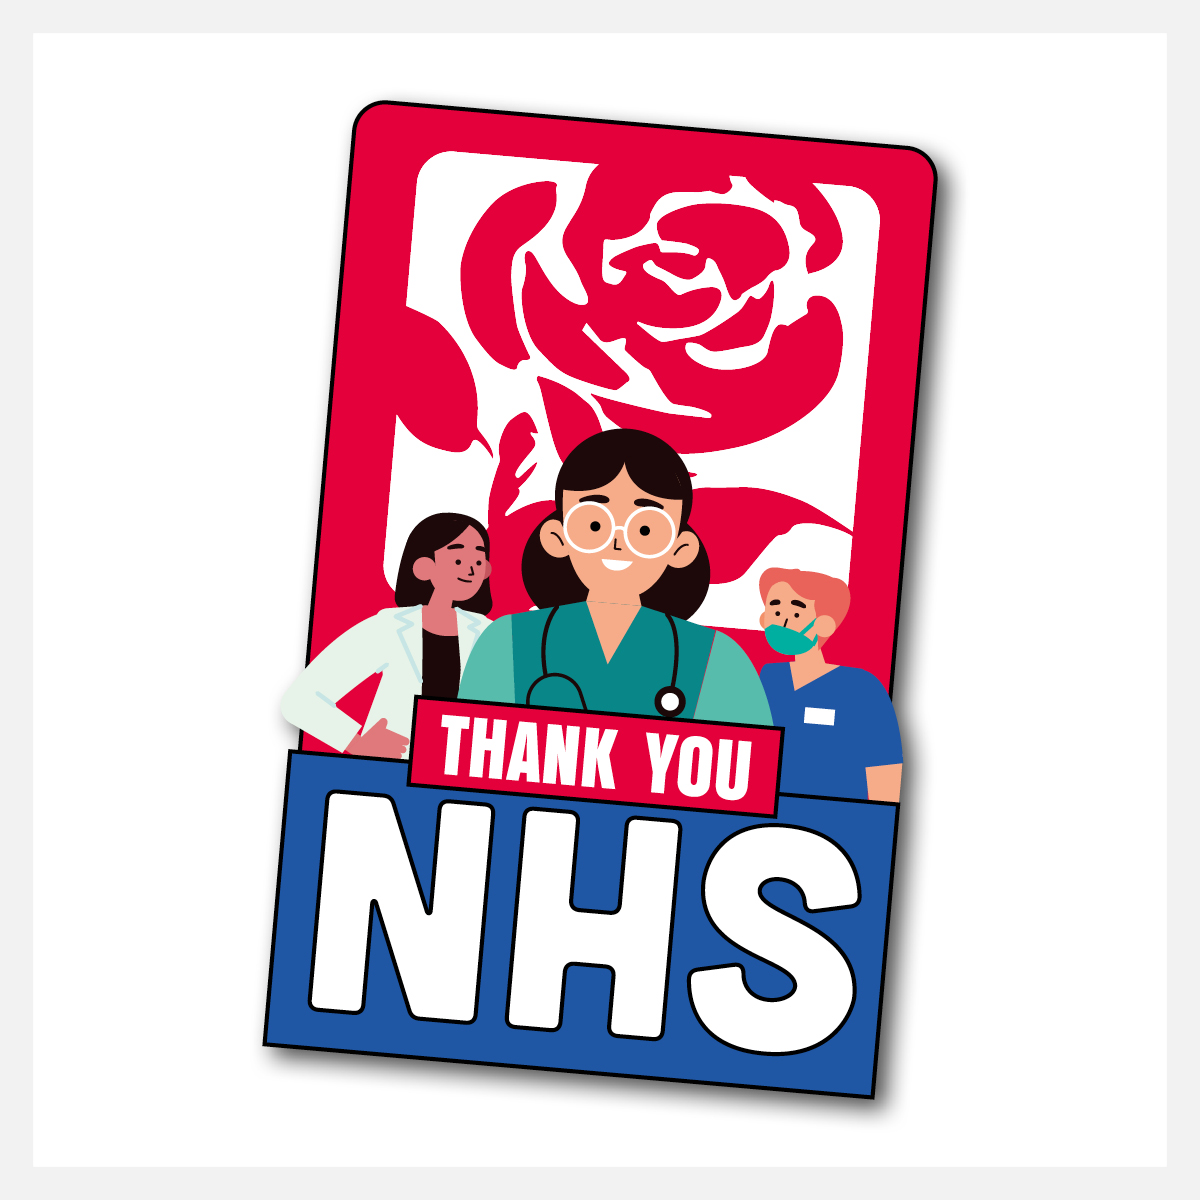 Thank you NHS pin badge